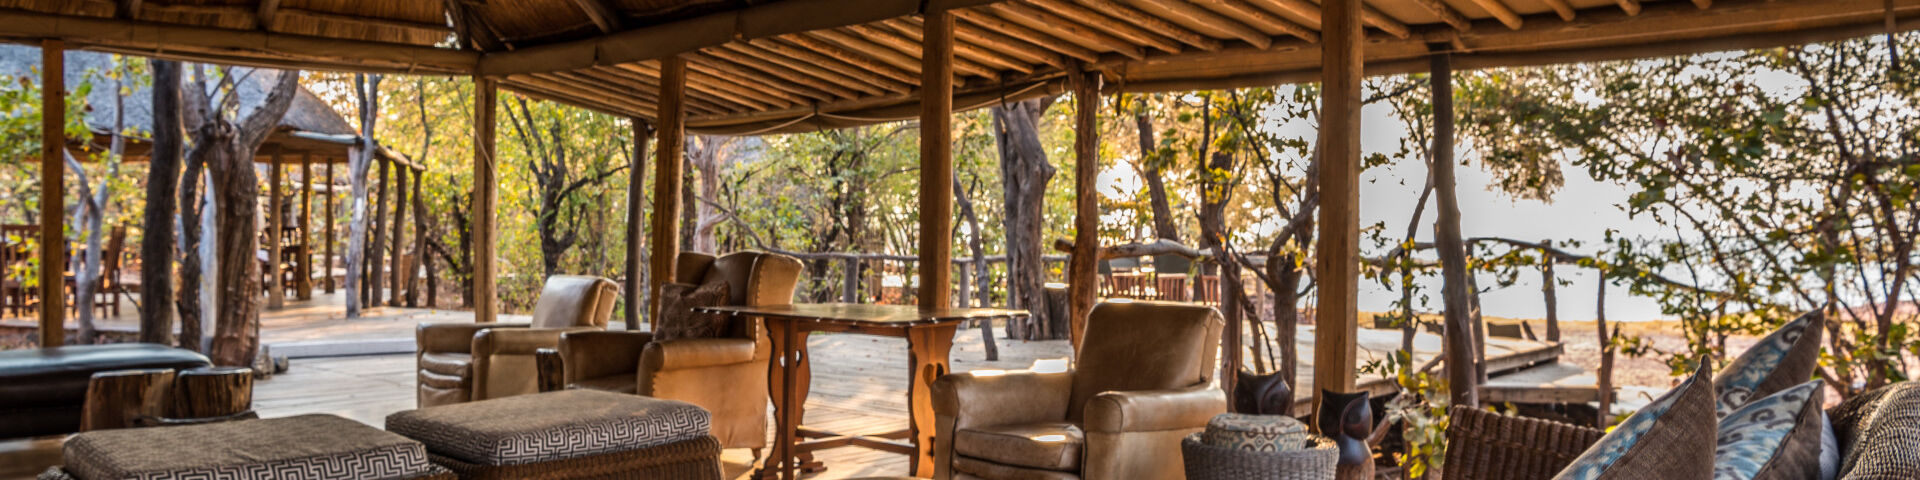 Changa Safari Camp - Matusadona National Park Zimbabwe - View from guest lounge